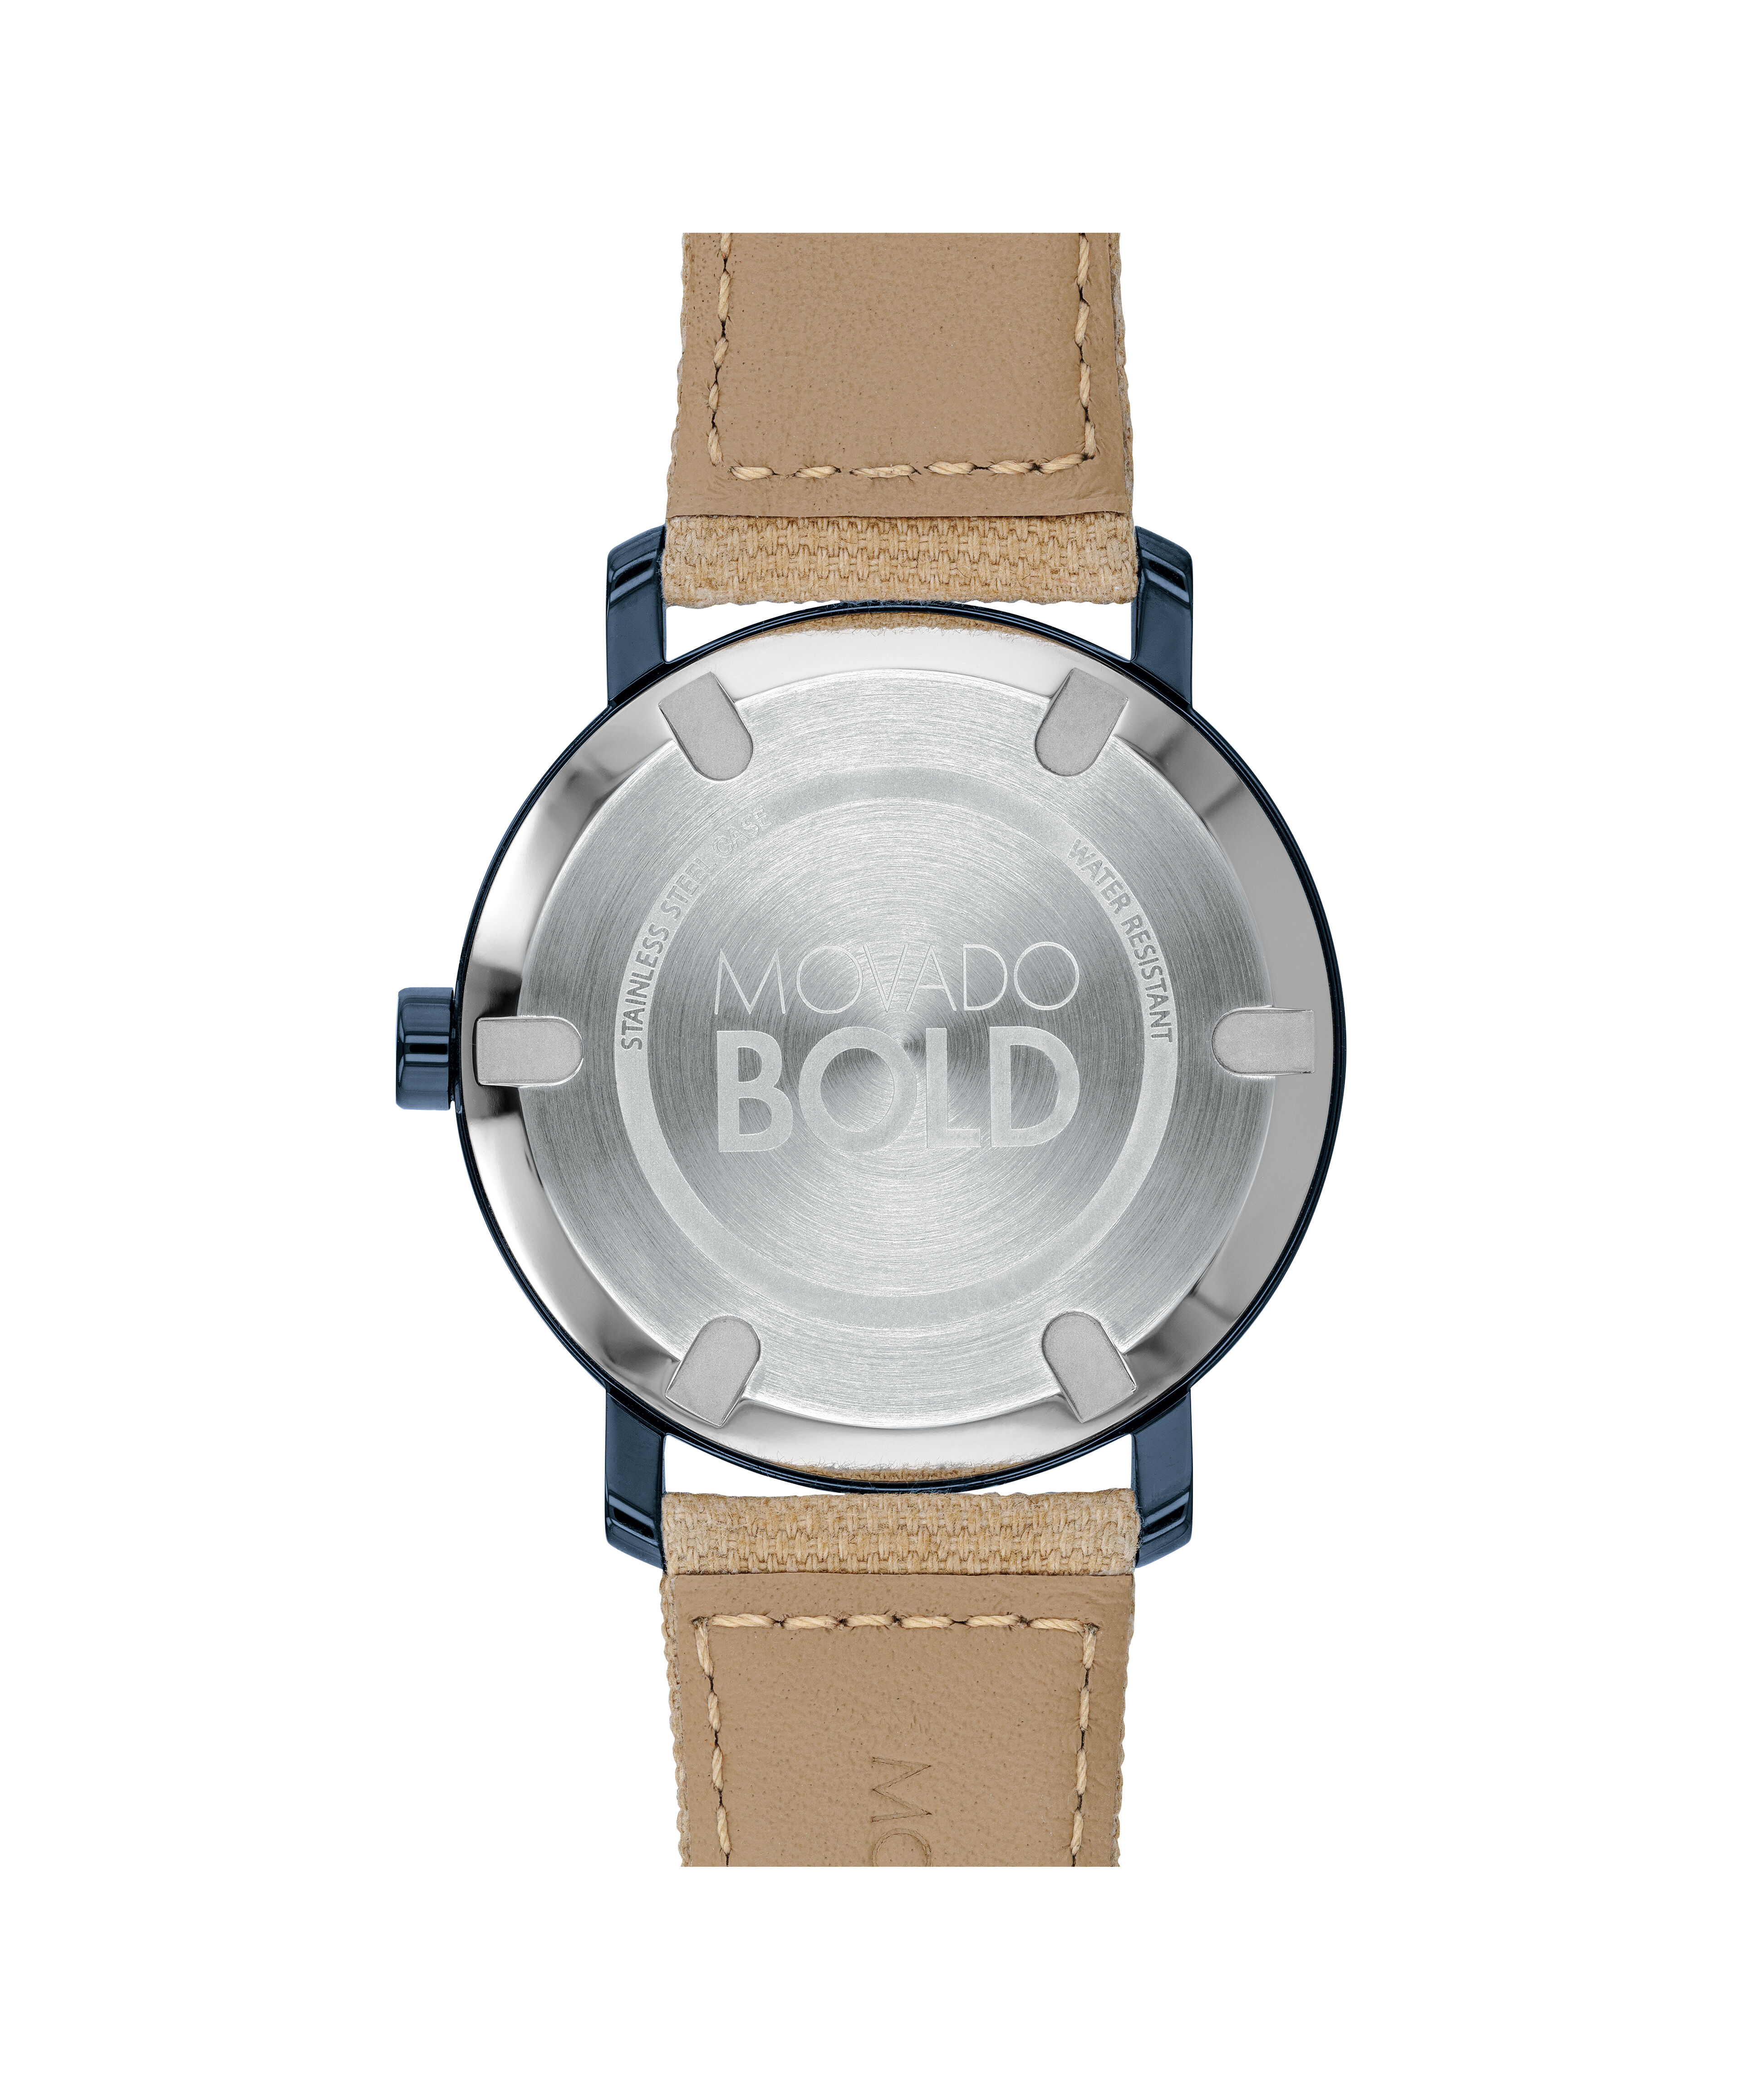 Movado vintageMovado vintage steel 33mm solidograf watch mint condition